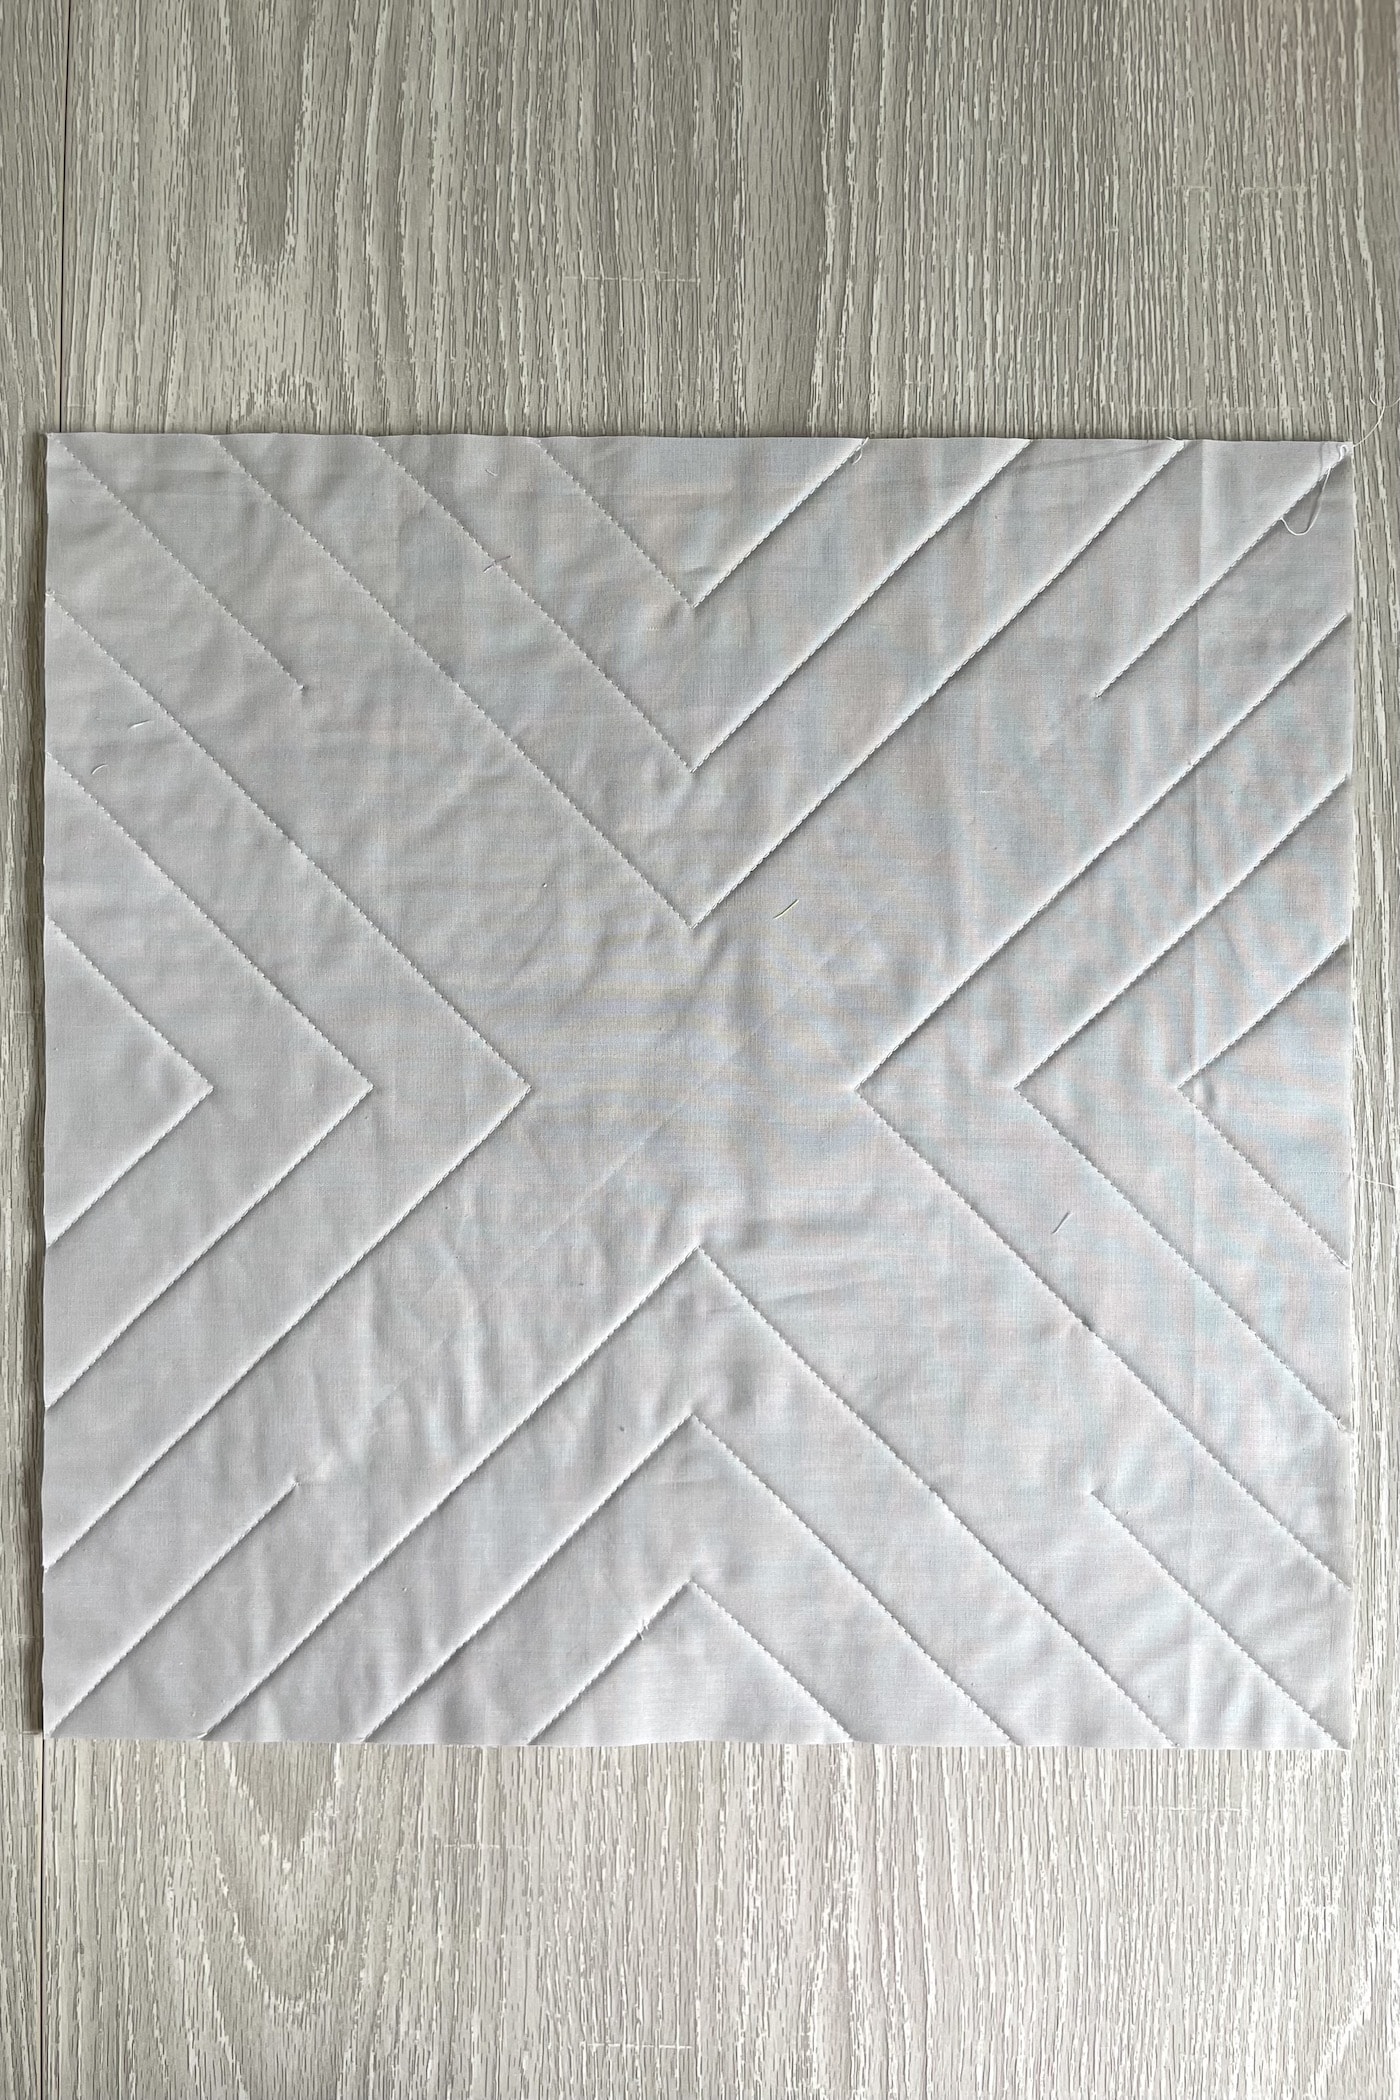 photo détaillée montrant les lignes de courtepointe au dos d'un oreiller en tissu